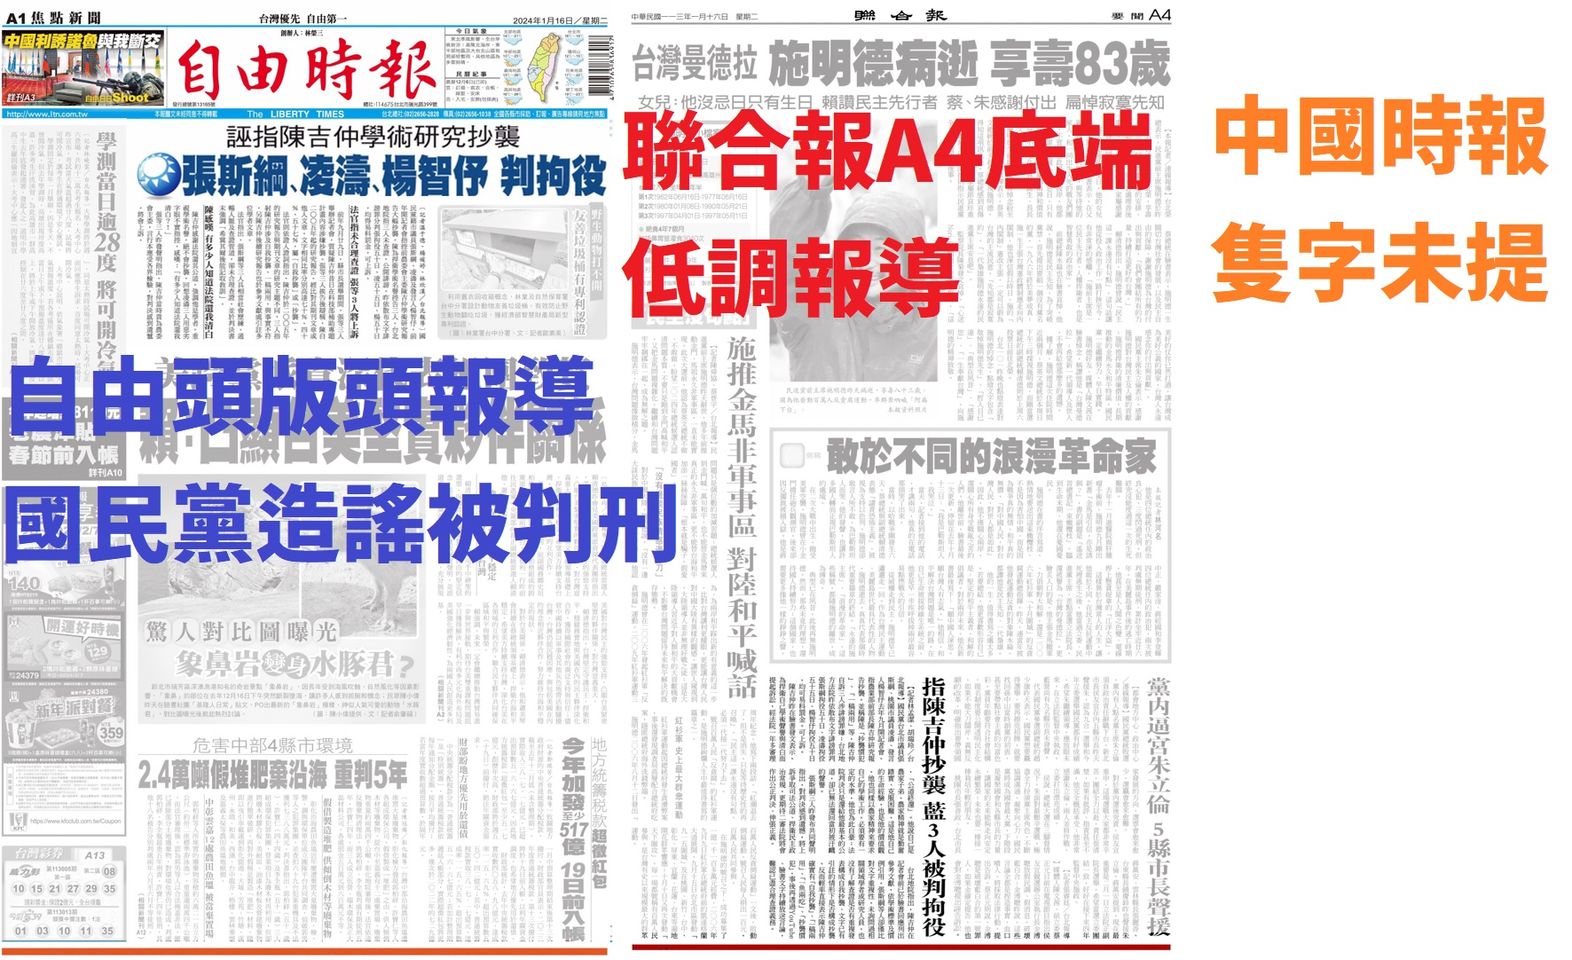 國民黨造謠陳吉仲被判拘役新聞 中國時報找不到